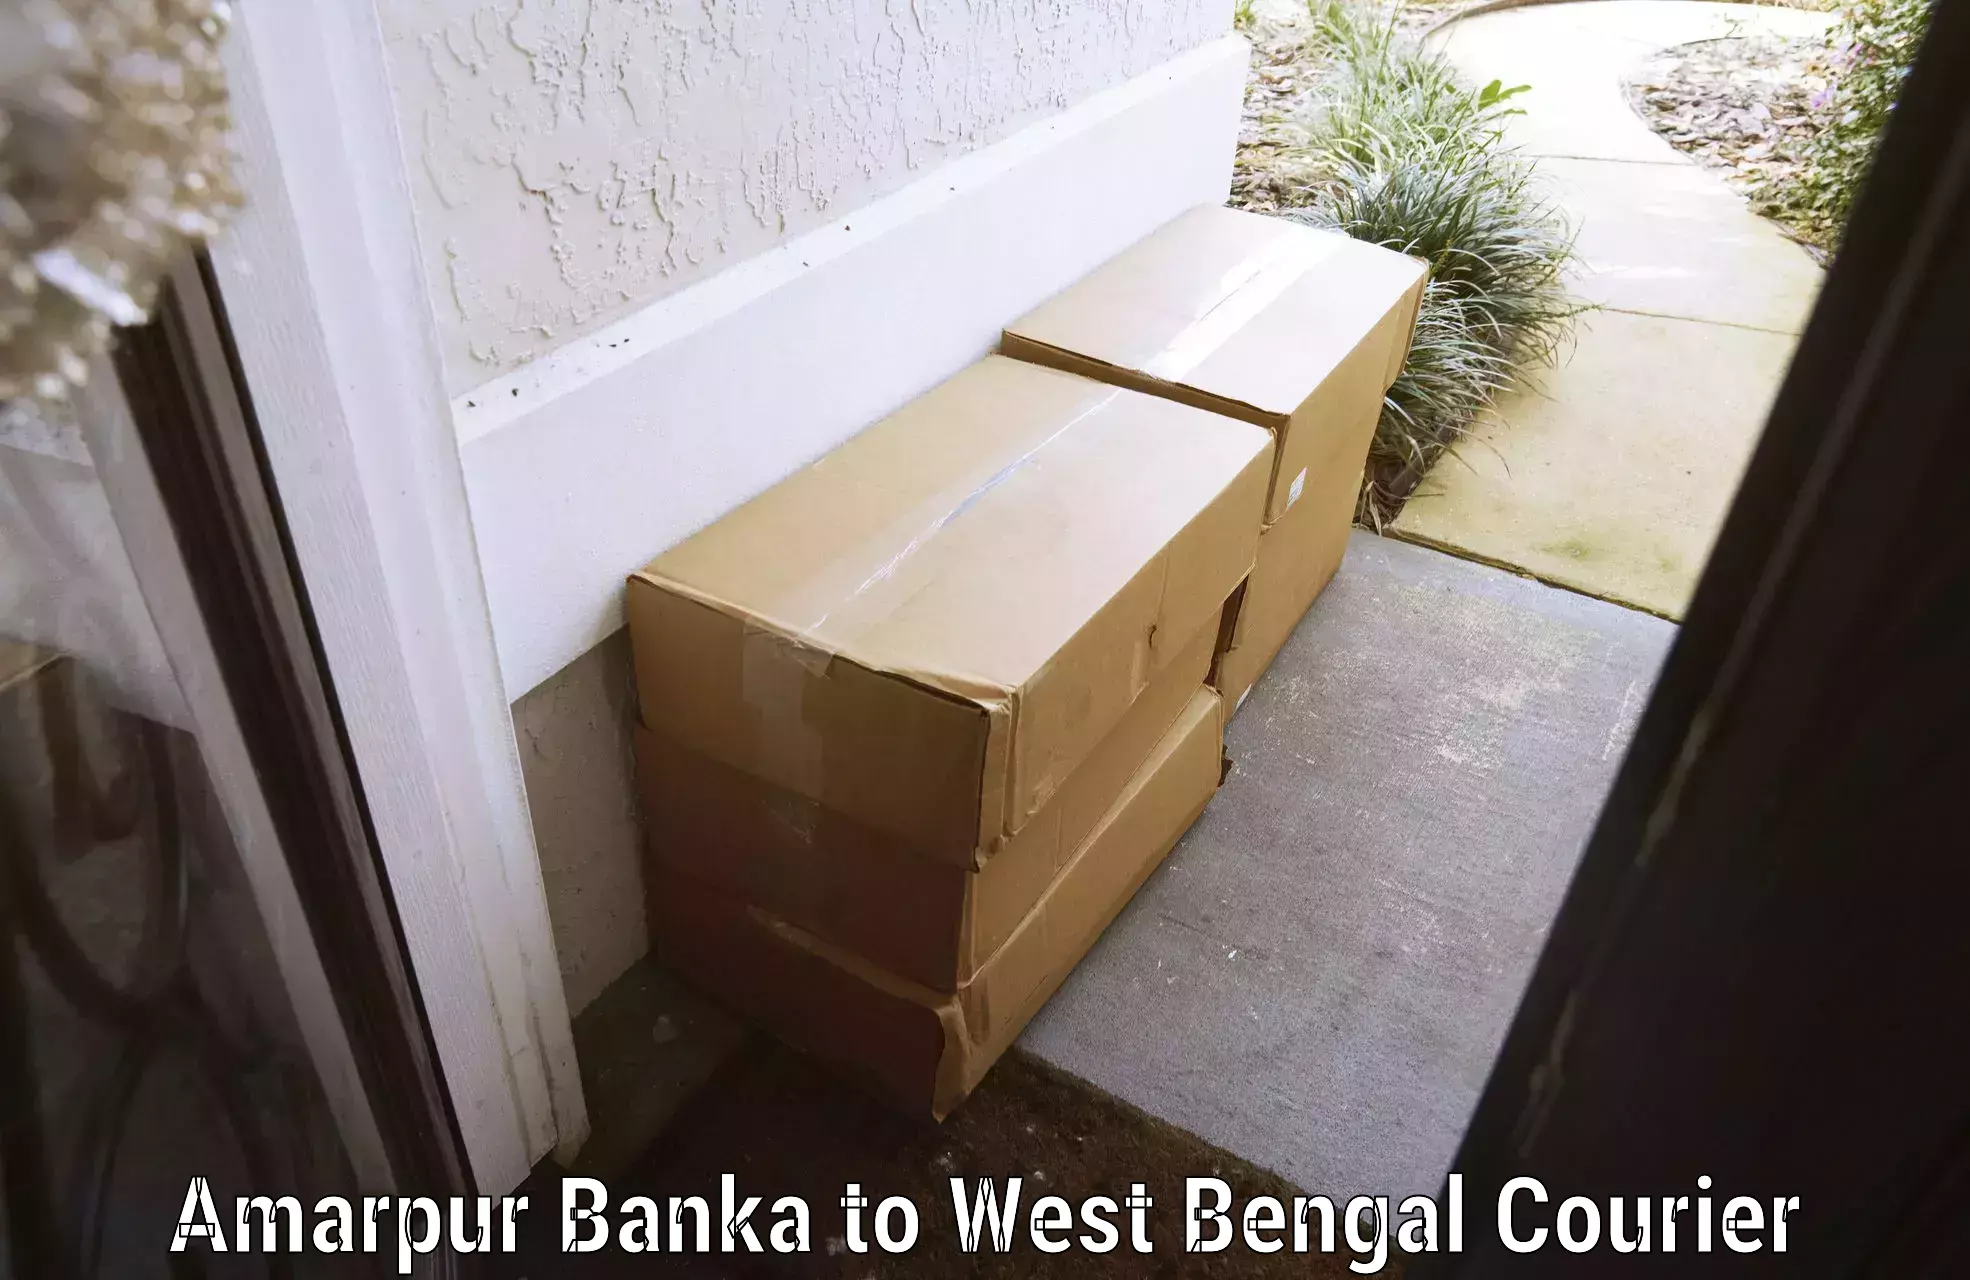 Digital baggage courier Amarpur Banka to Gangajalghati